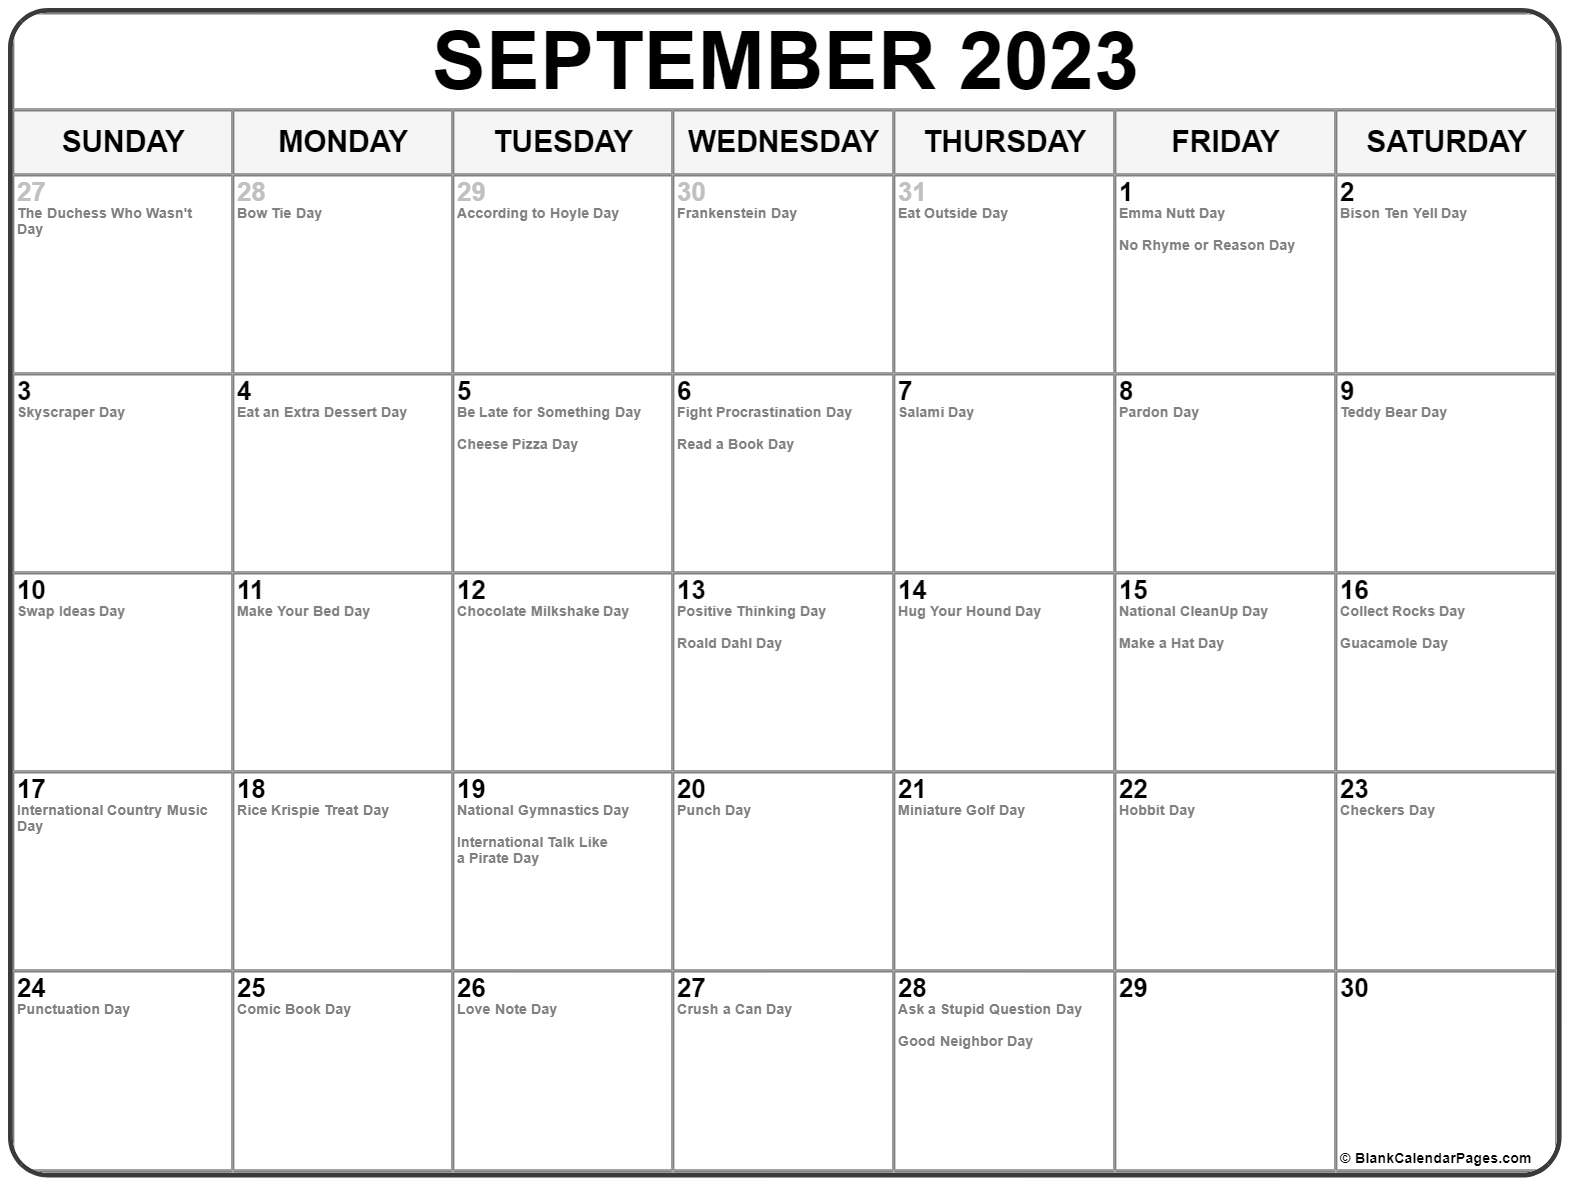 free-2023-holiday-calendar-in-2023-holiday-calendar-calendar-www